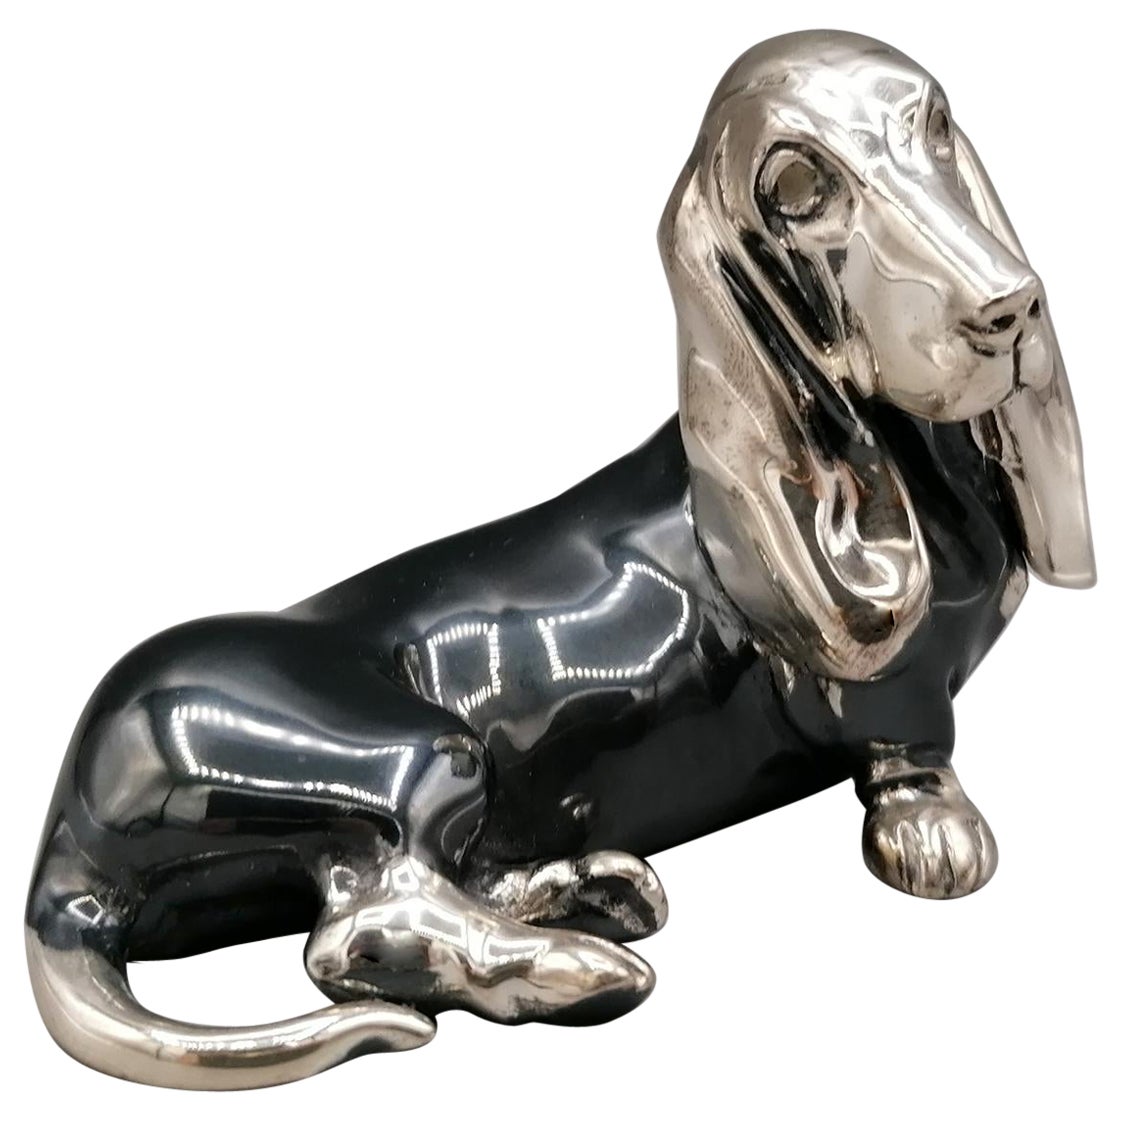 Solide Silberkultur des 20. Jahrhunderts mit der Darstellung eines Basset-Hundhundes